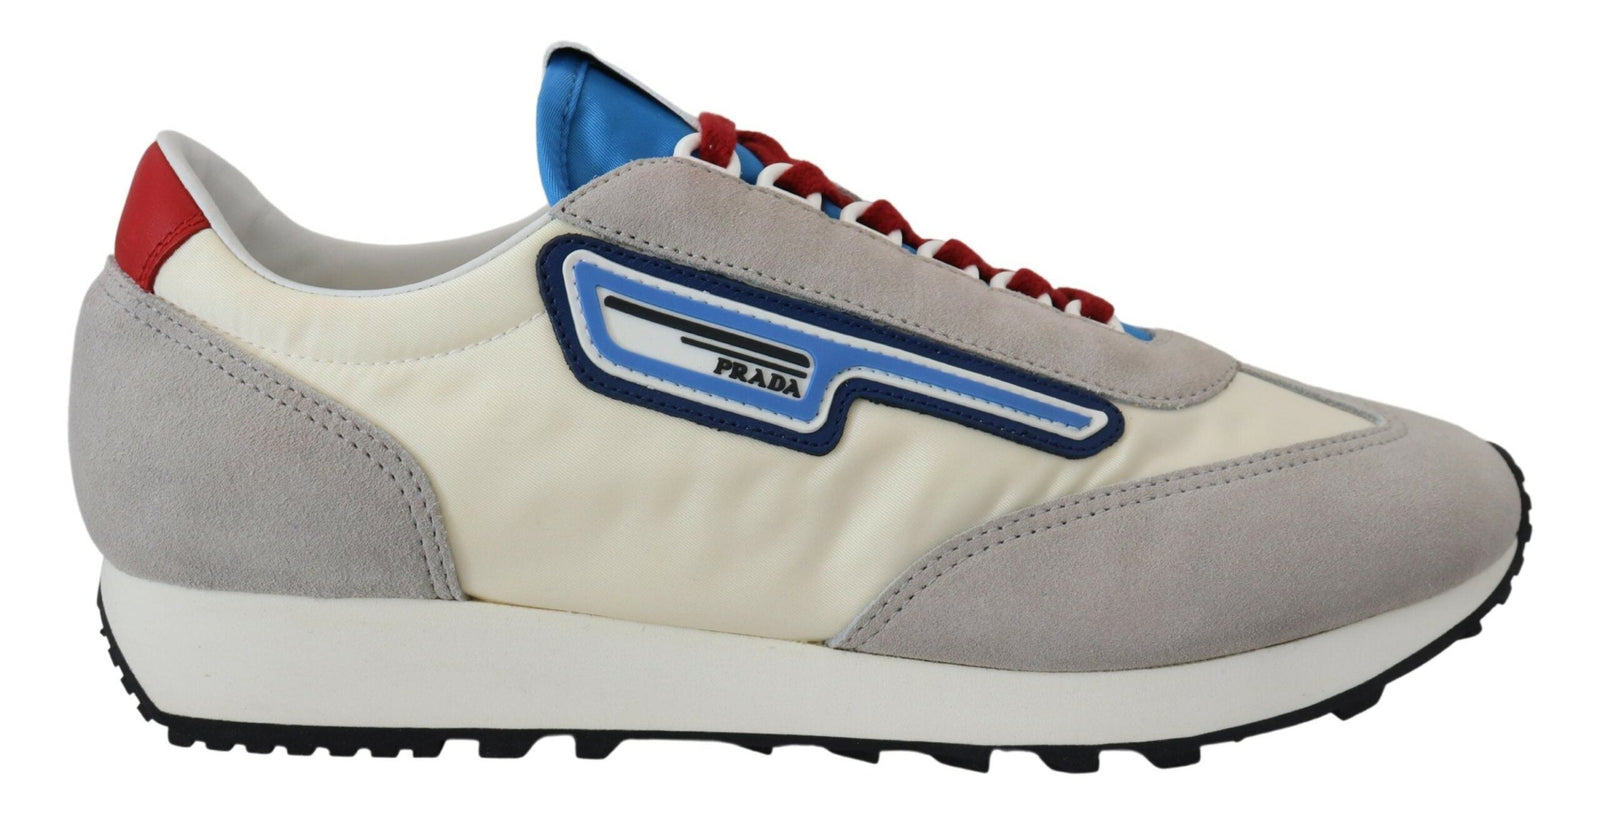 Prada Multicolor Milano 70 Suede Running Sneakers Shoes